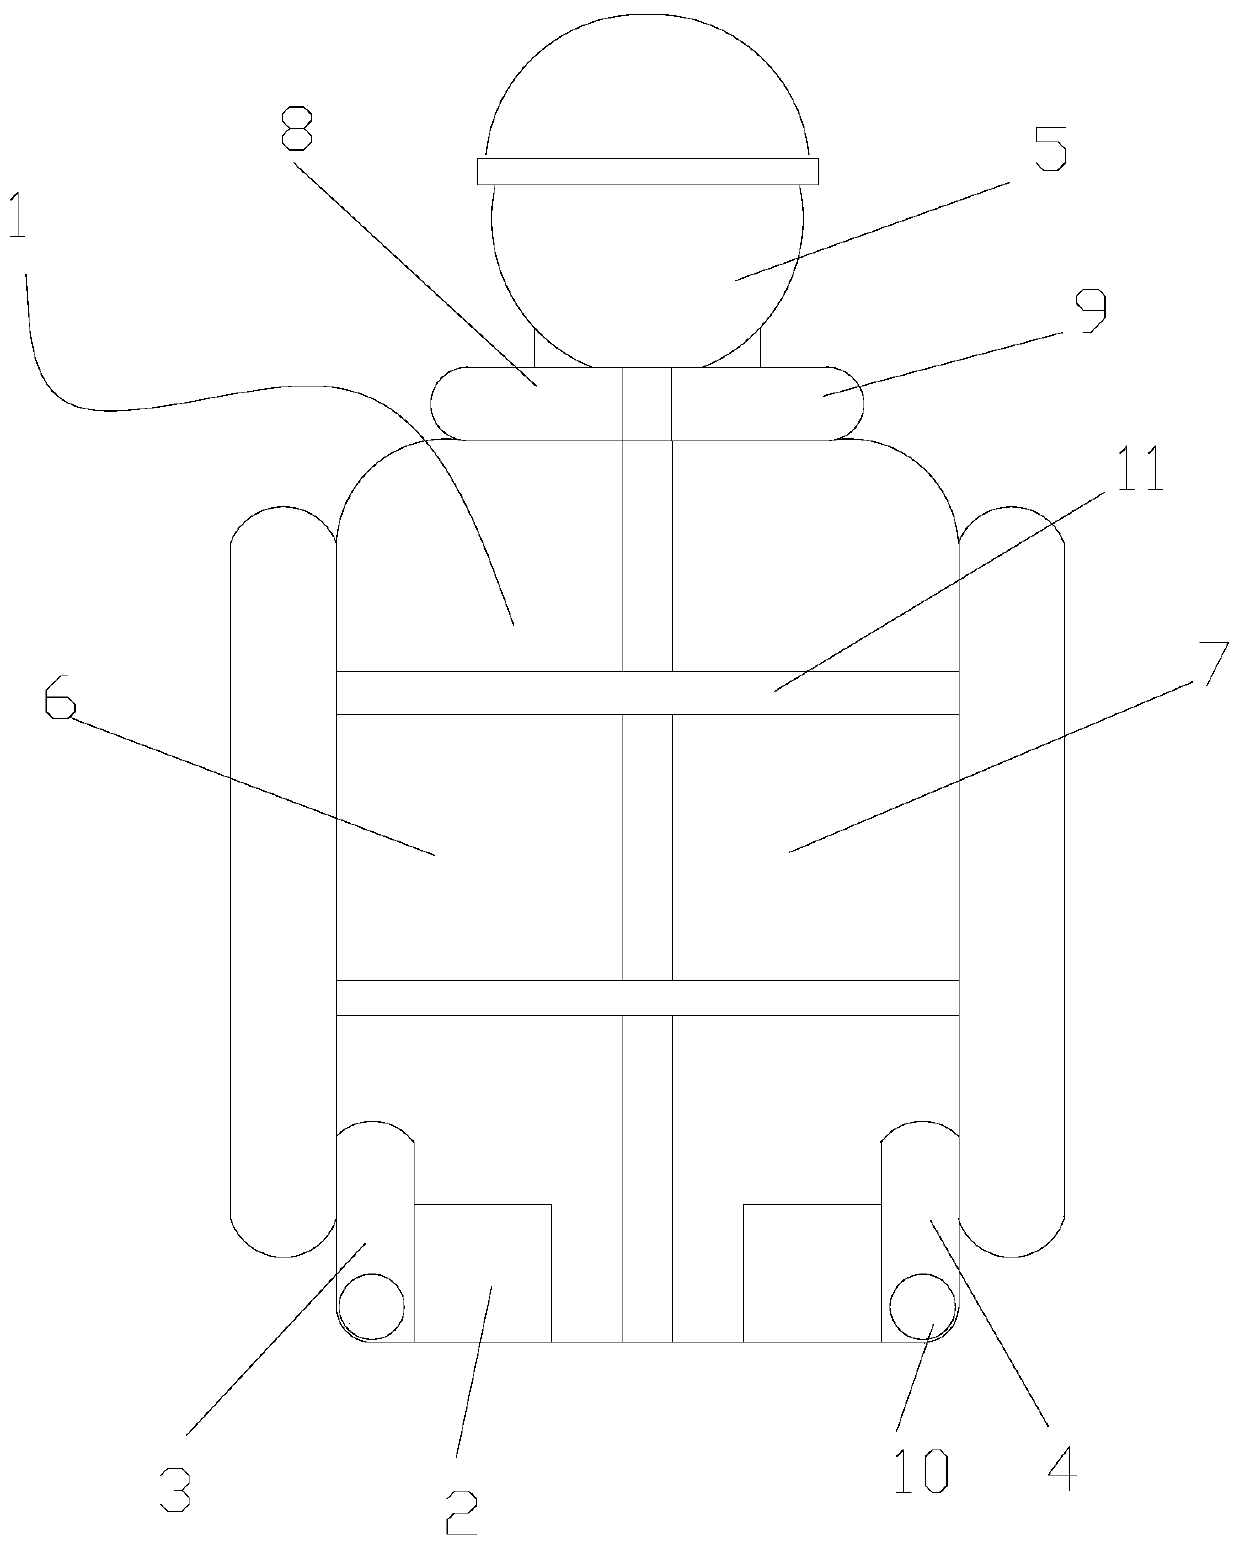 Inflatable safety vest based on gyro sensor